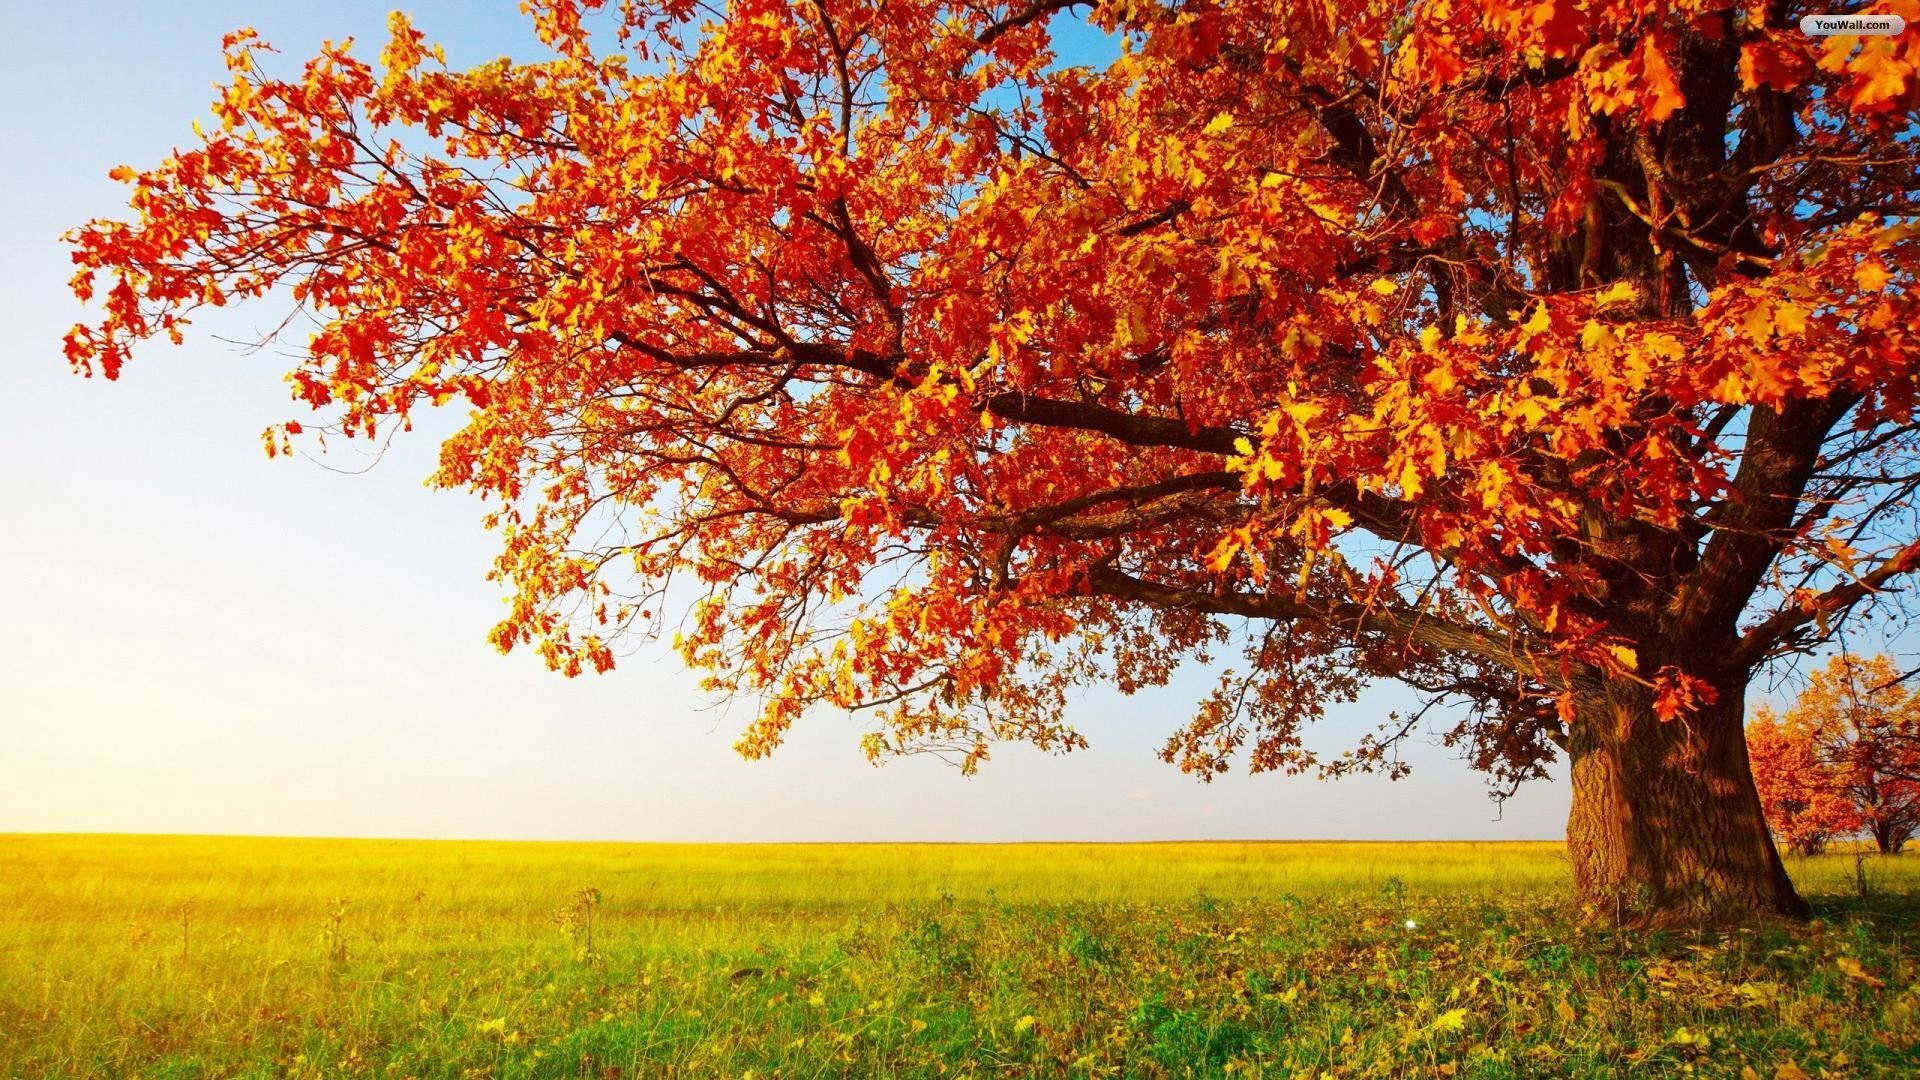 A peaceful rural scene of an orange tree in a golden field Wallpaper